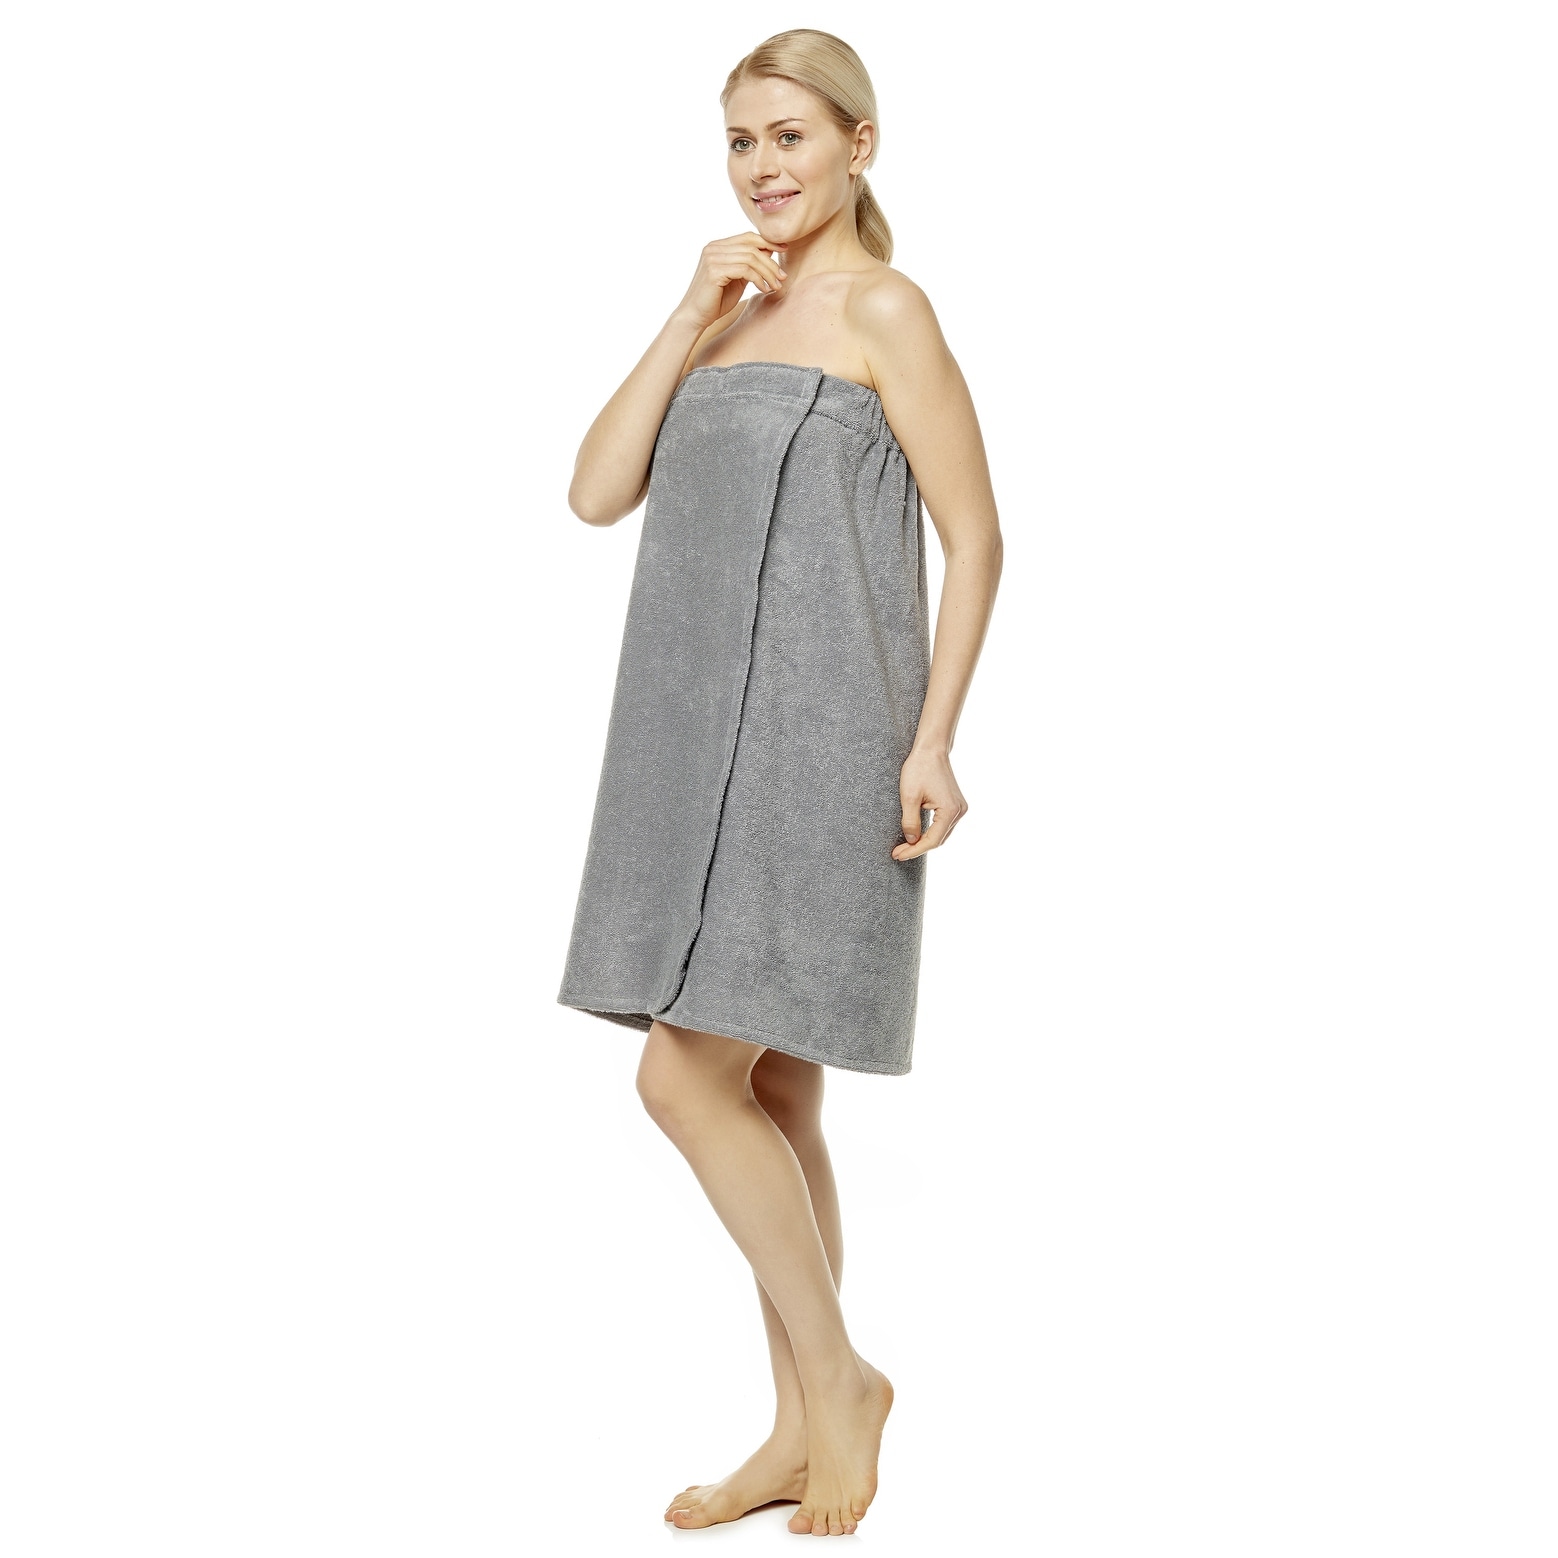 TopTie Women's Cotton Terry Spa Shower Bath Towel Wrap Assorted Color 